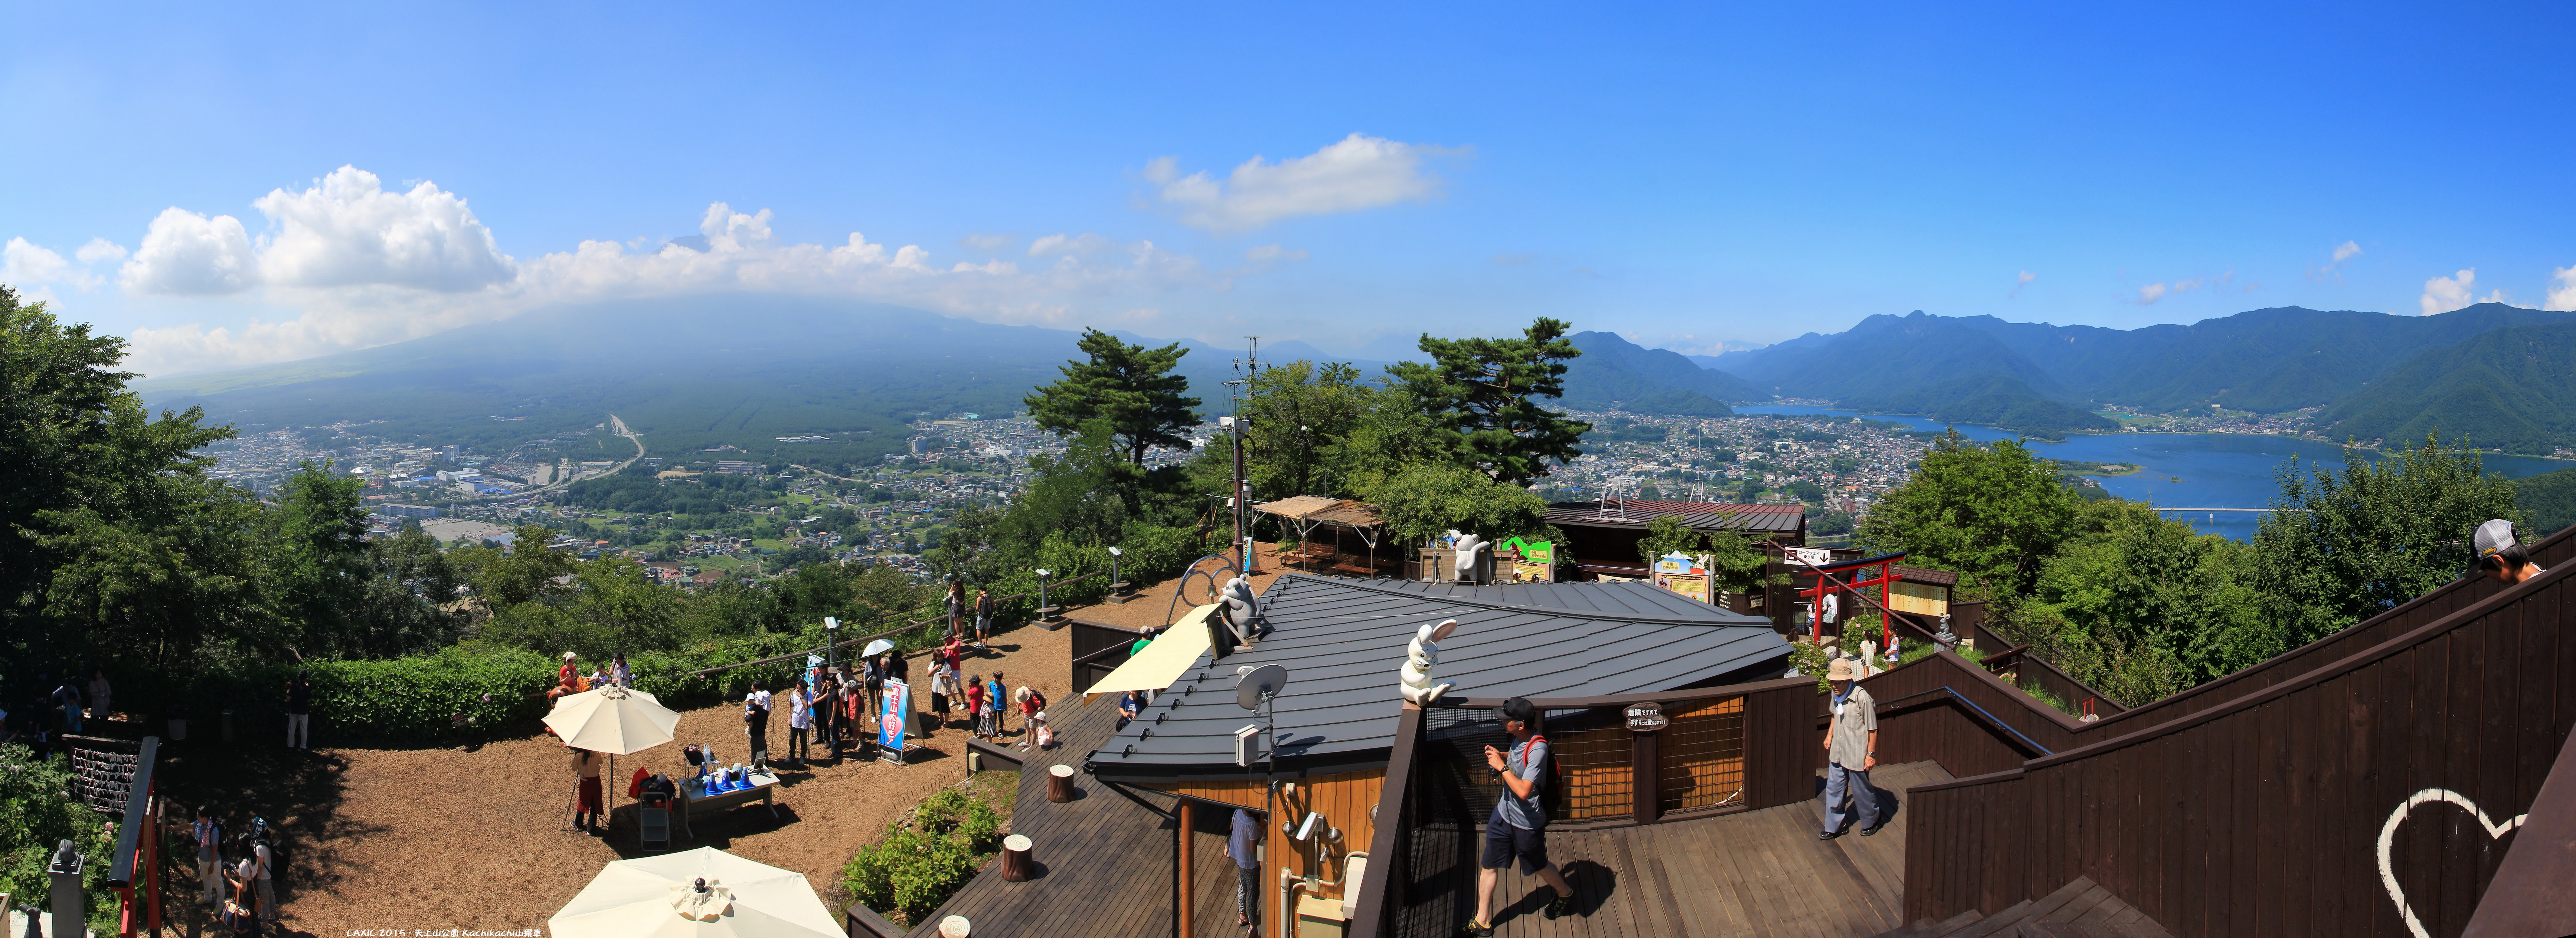 2015.08 天上山公園 Kachikachi山纜車